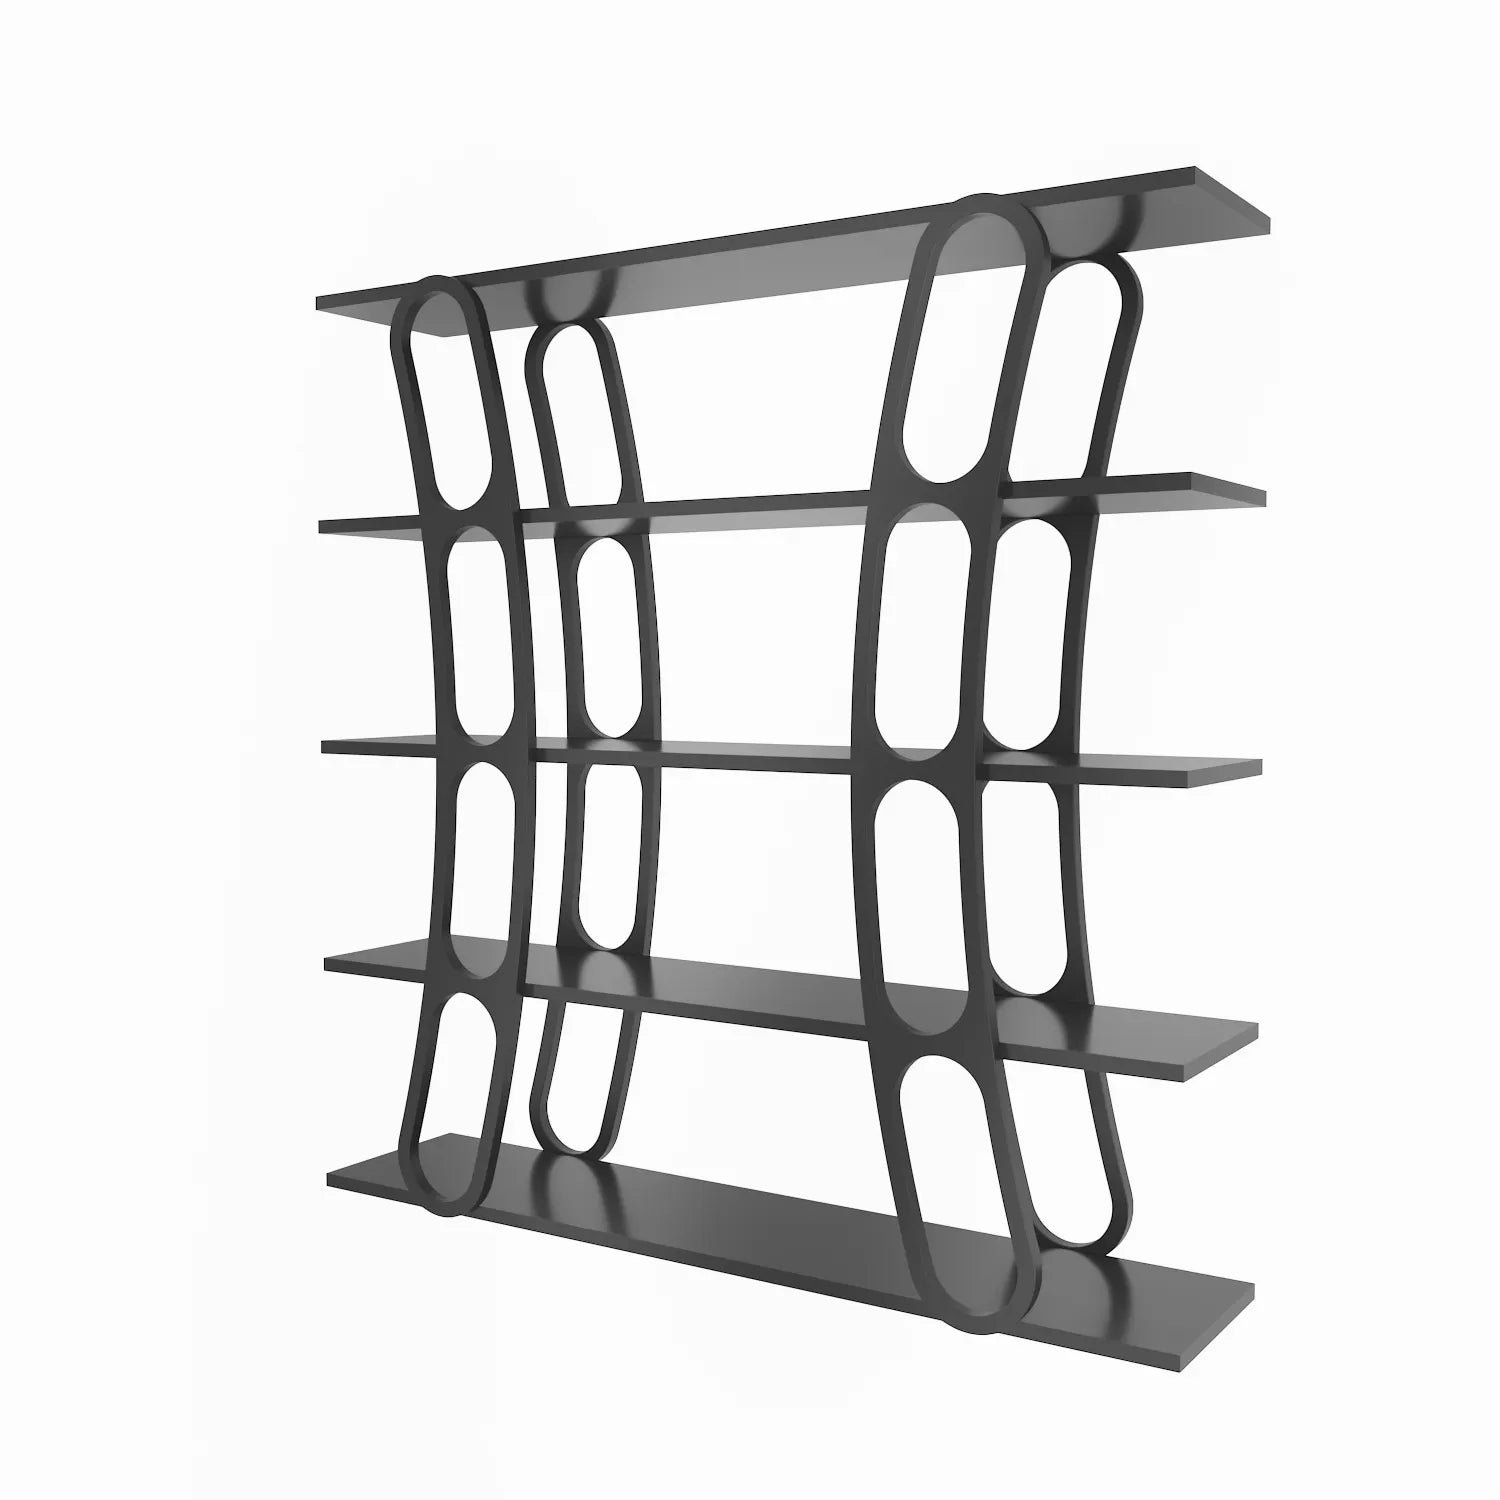 Adar 47" Tall Bookcase | Bookshelf | Display Unit